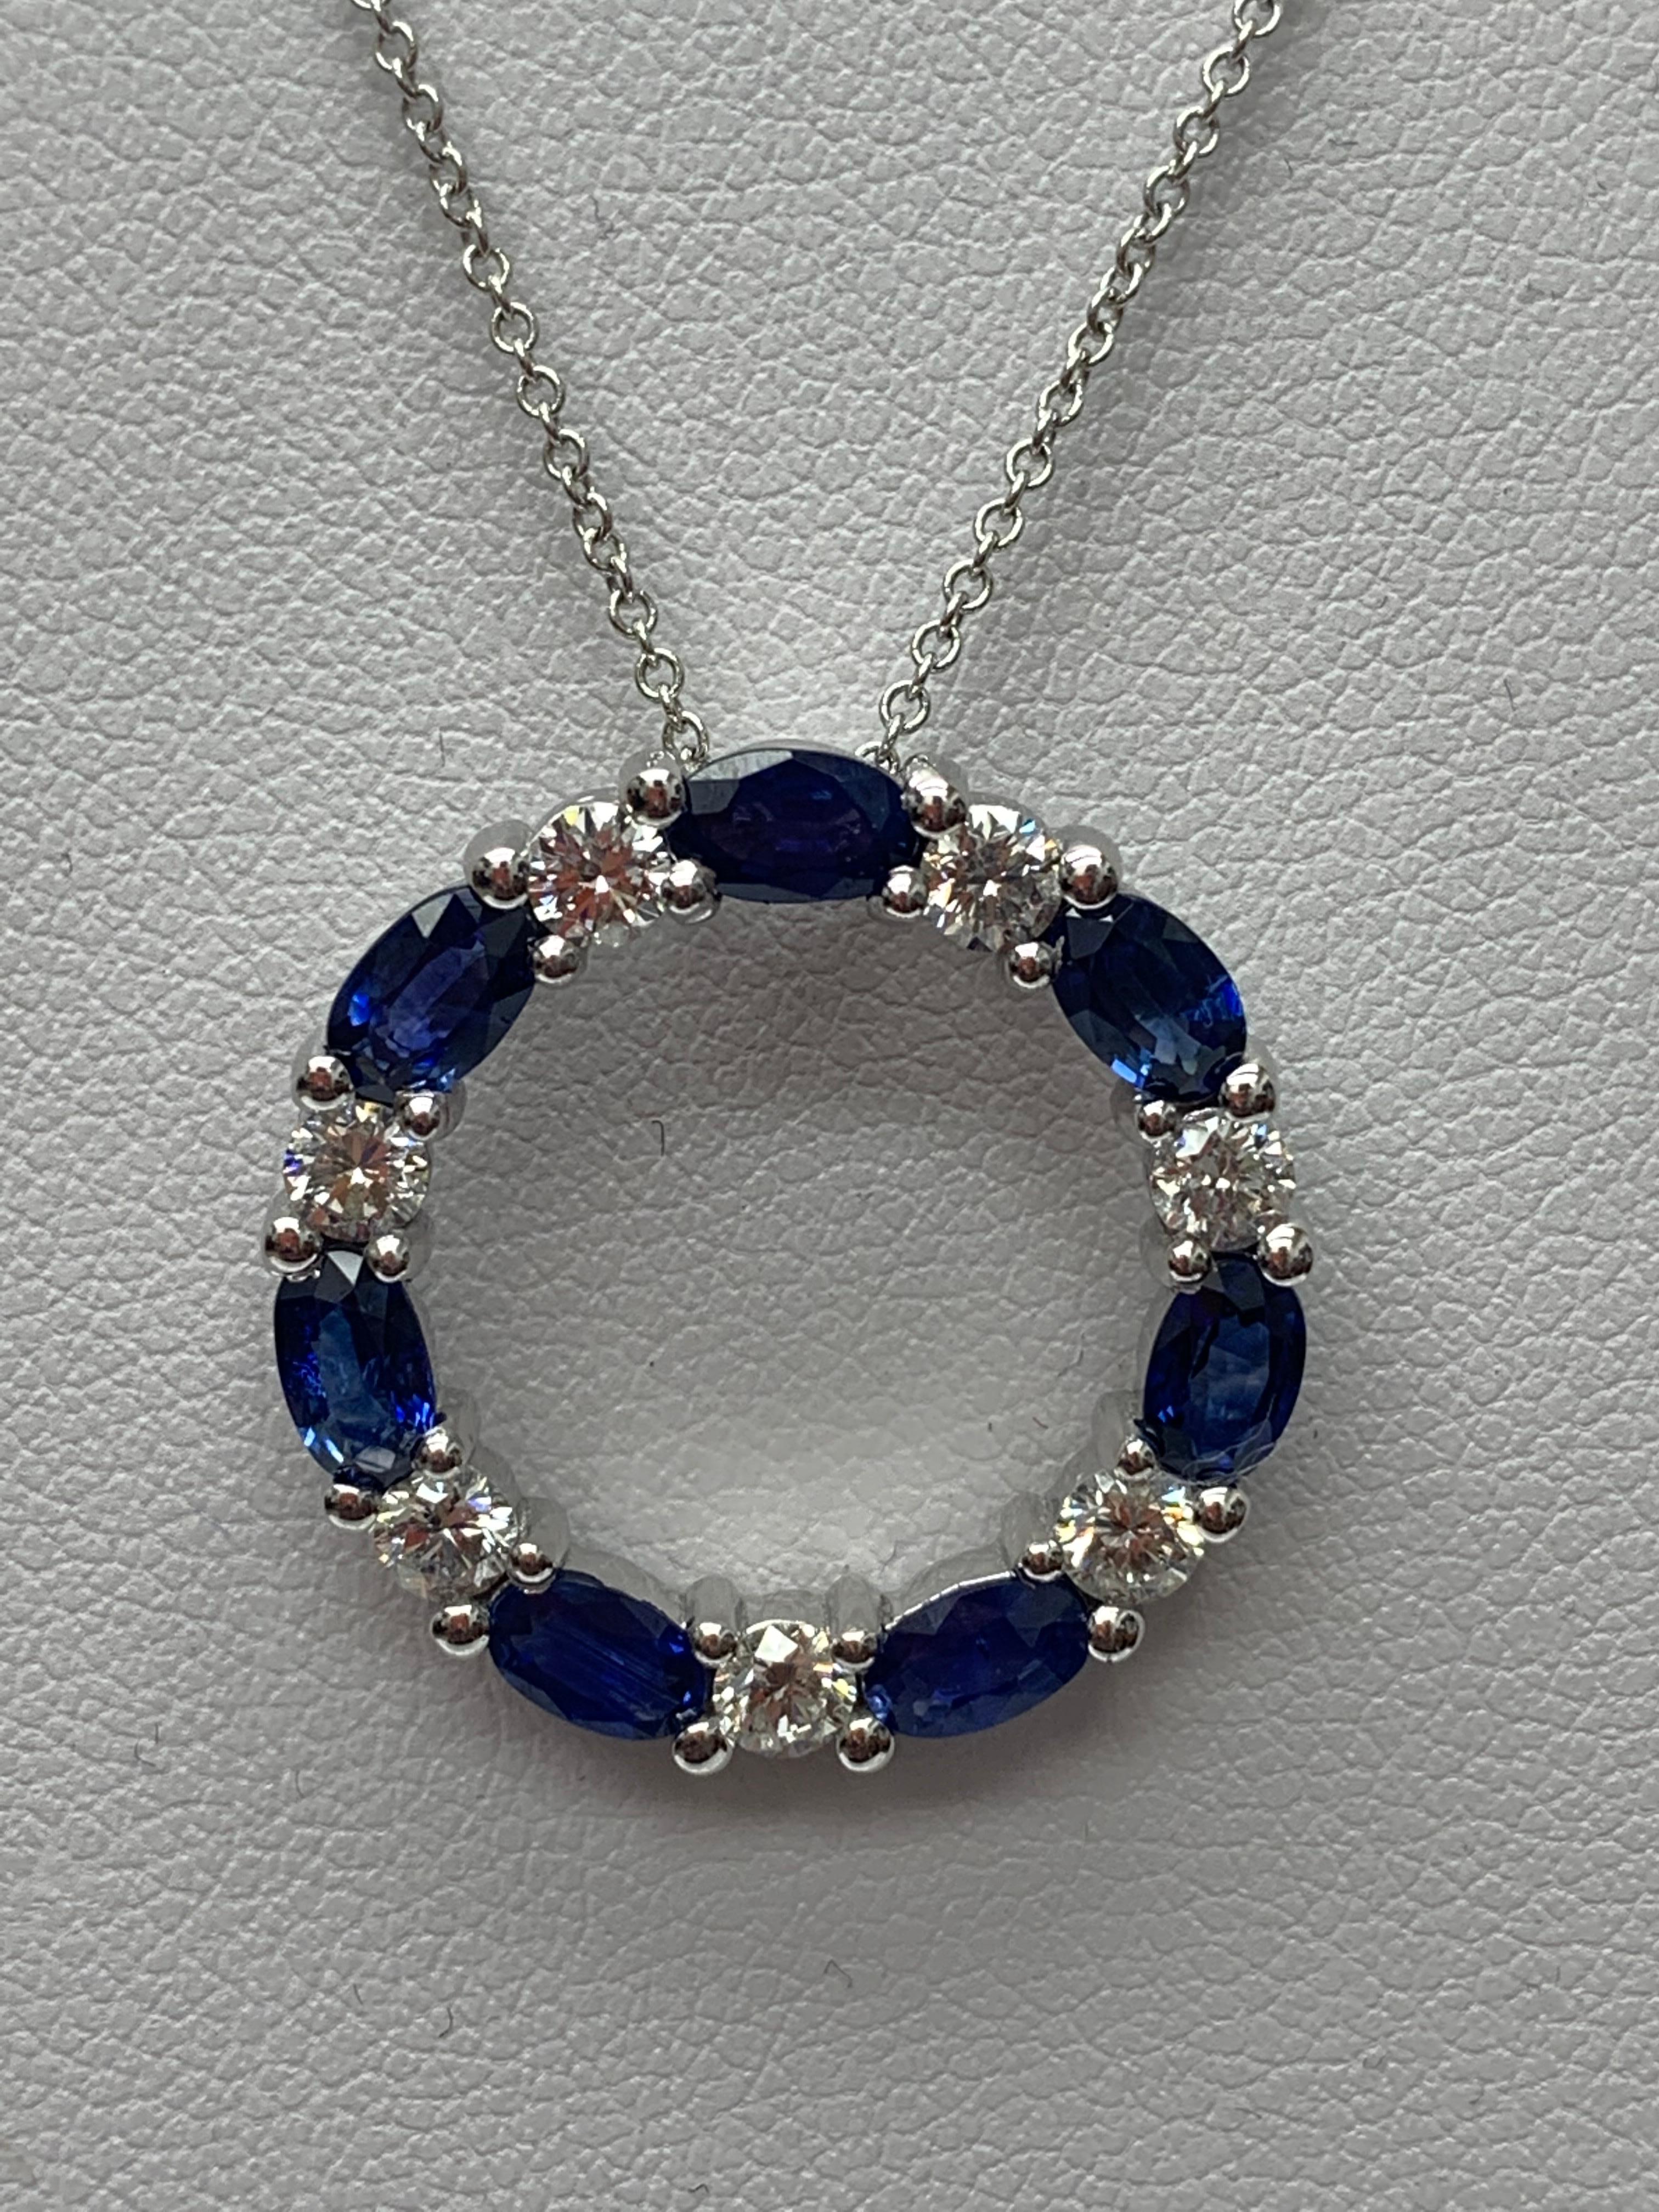 Eine stilvolle Anhänger-Halskette mit einer Reihe von blauen Saphiren, die sich mit Diamanten abwechseln, gefasst in einem durchbrochenen, runden Design. 7 ovale Saphire wiegen 2,05 und 7 Diamanten im Brillantschliff wiegen insgesamt 0,71 Karat.